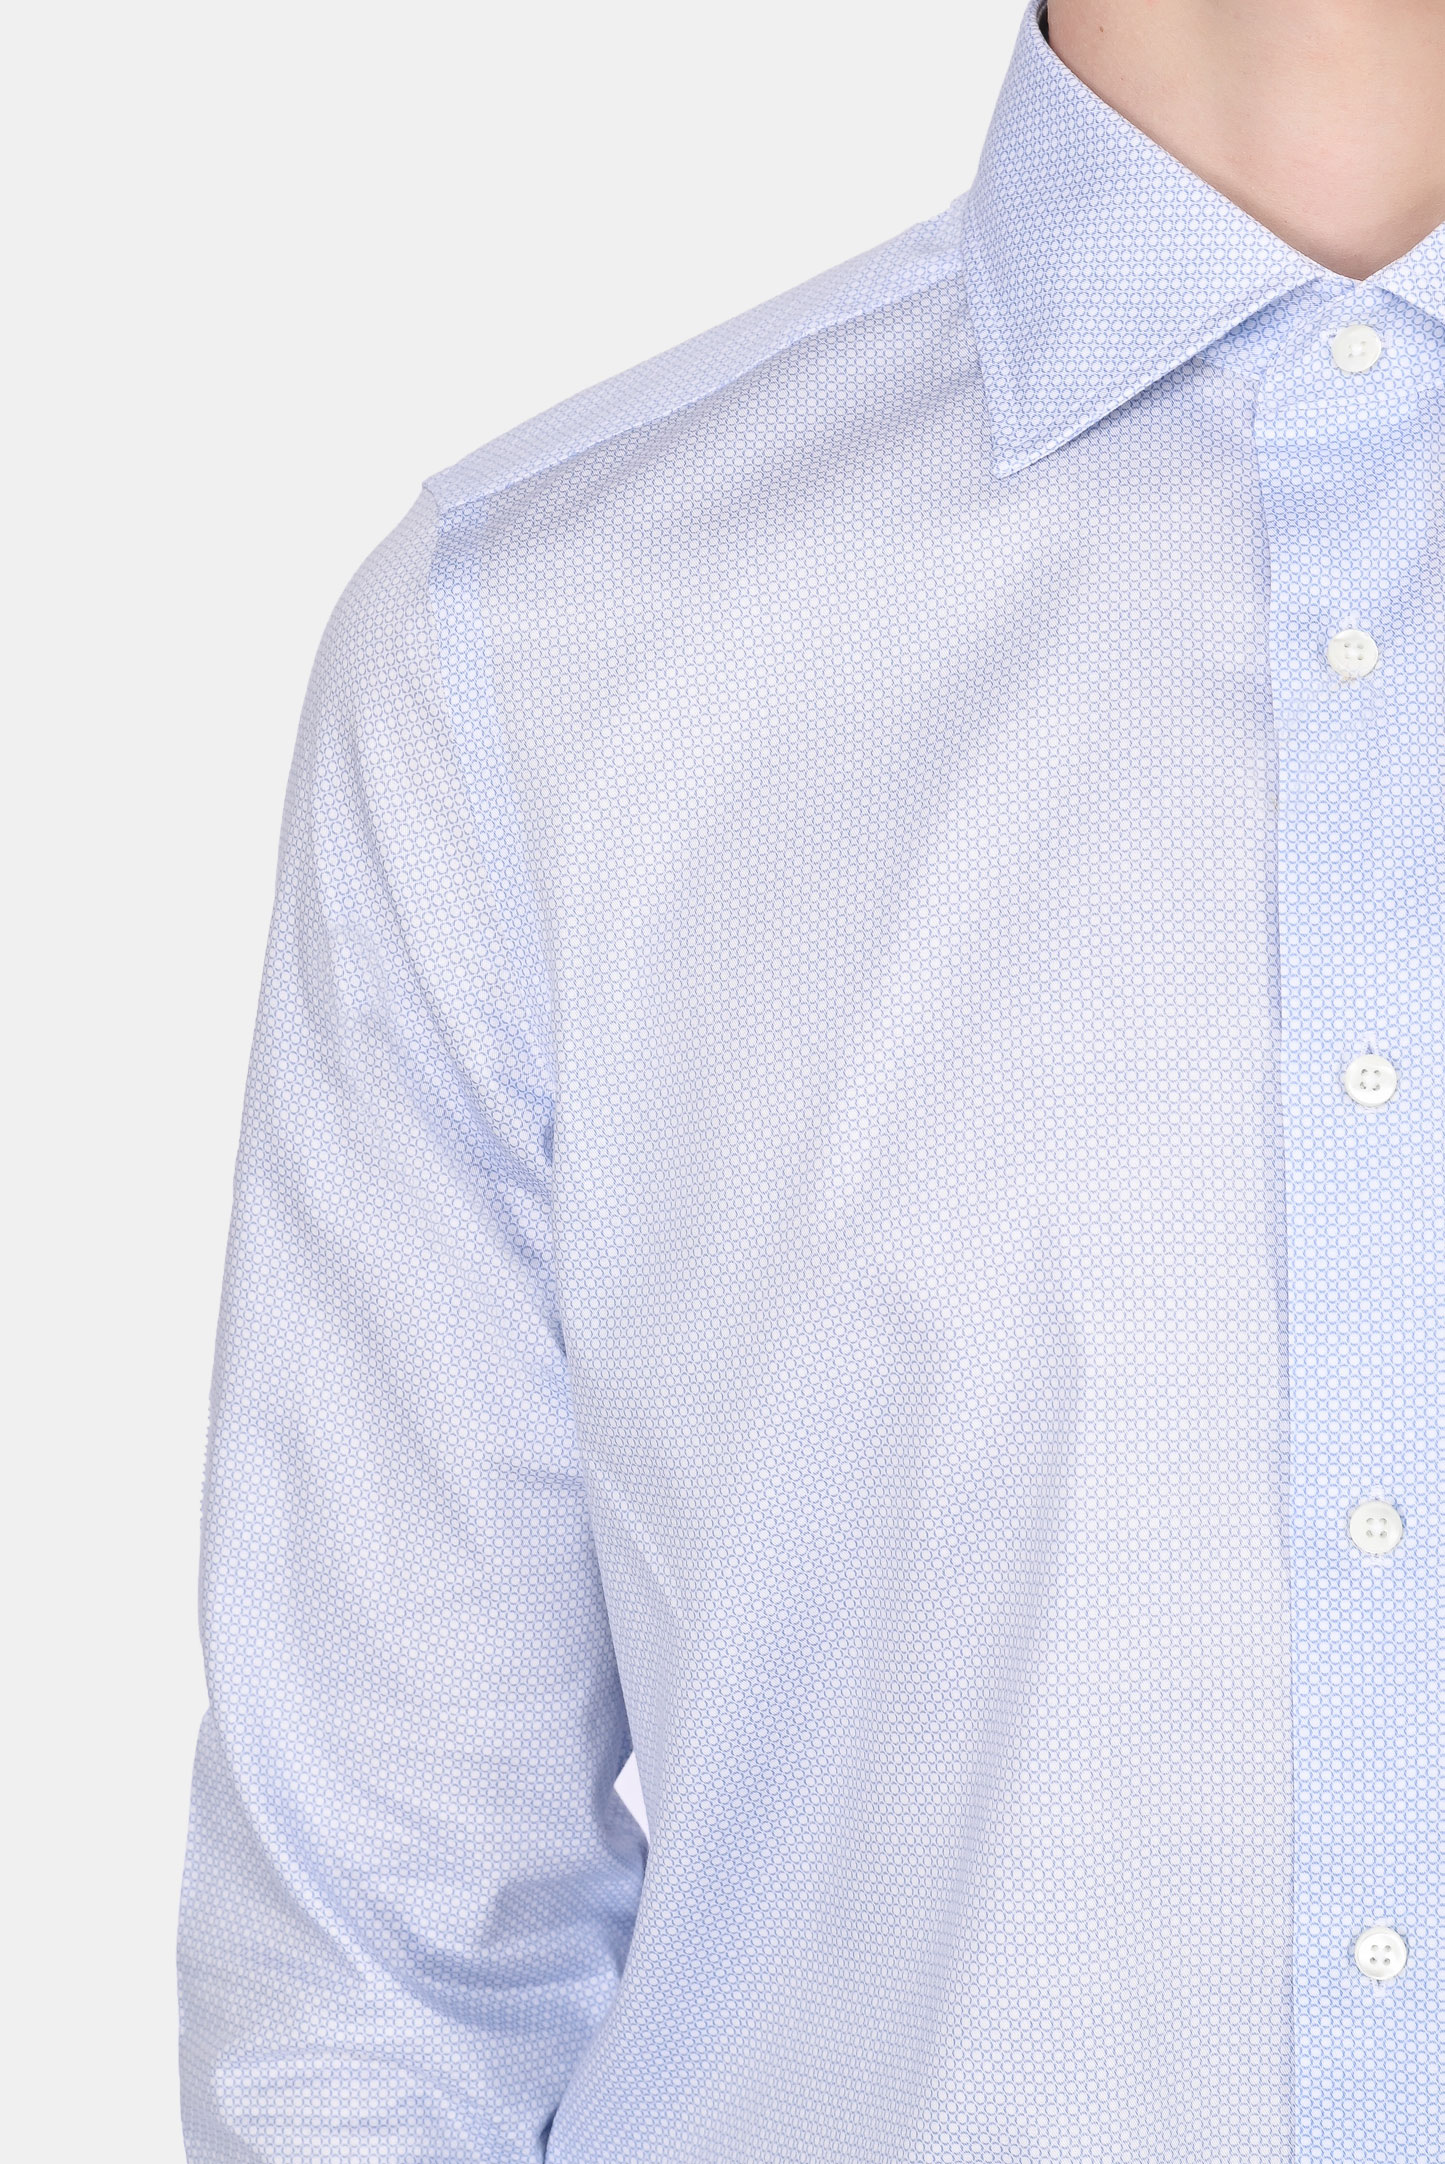 Рубашка CANALI GR02350/402, цвет: Белый, Мужской